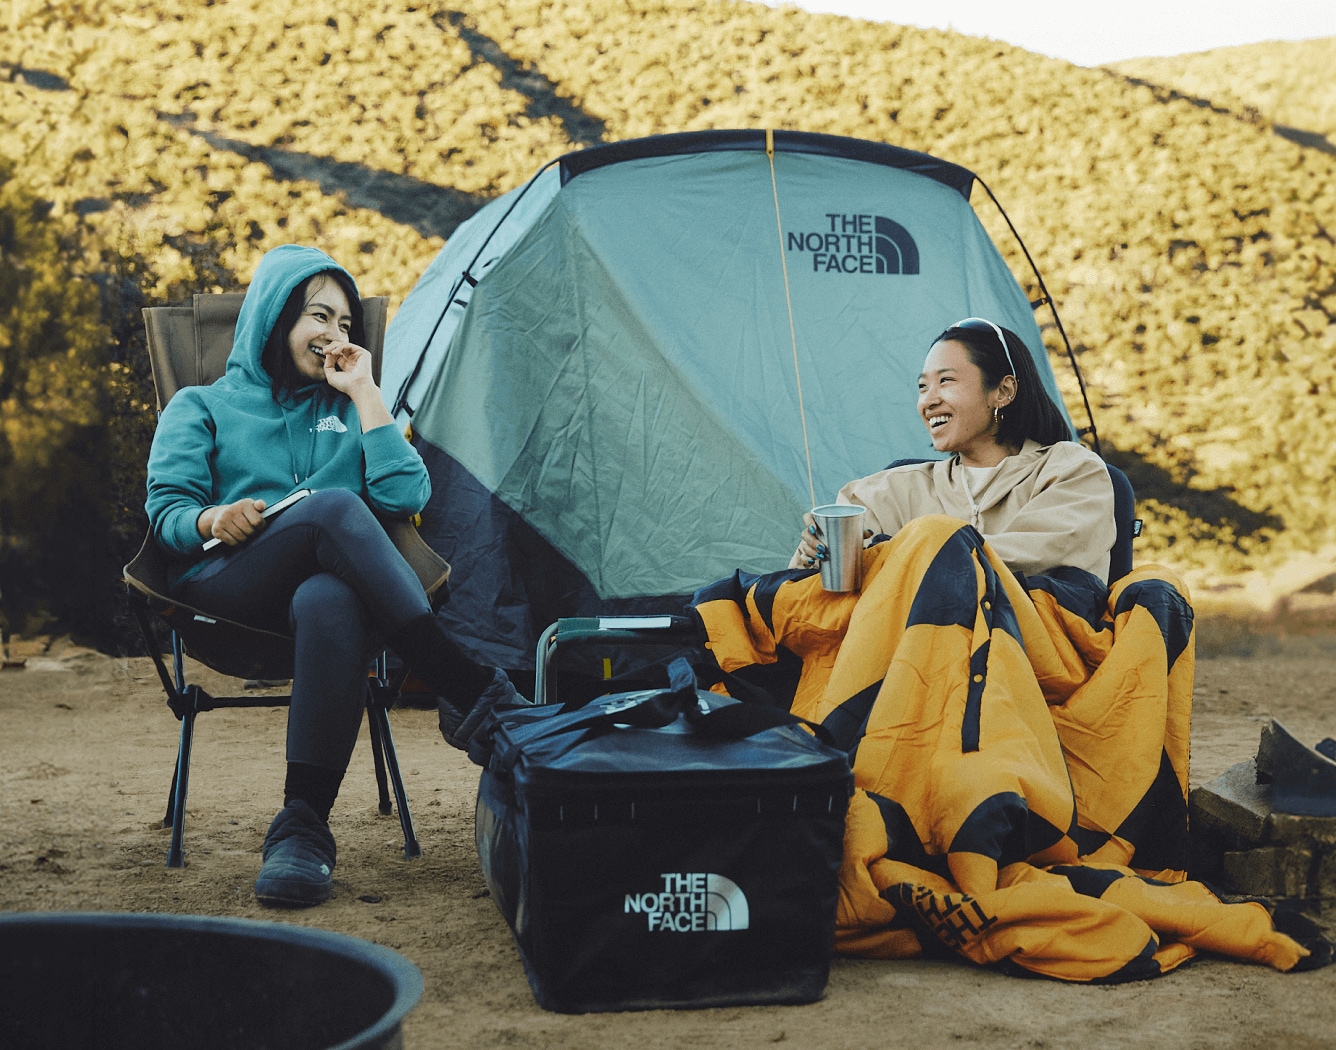 Deux amis rient ensemble, devant leur tente Wawona, dans un site de camping.